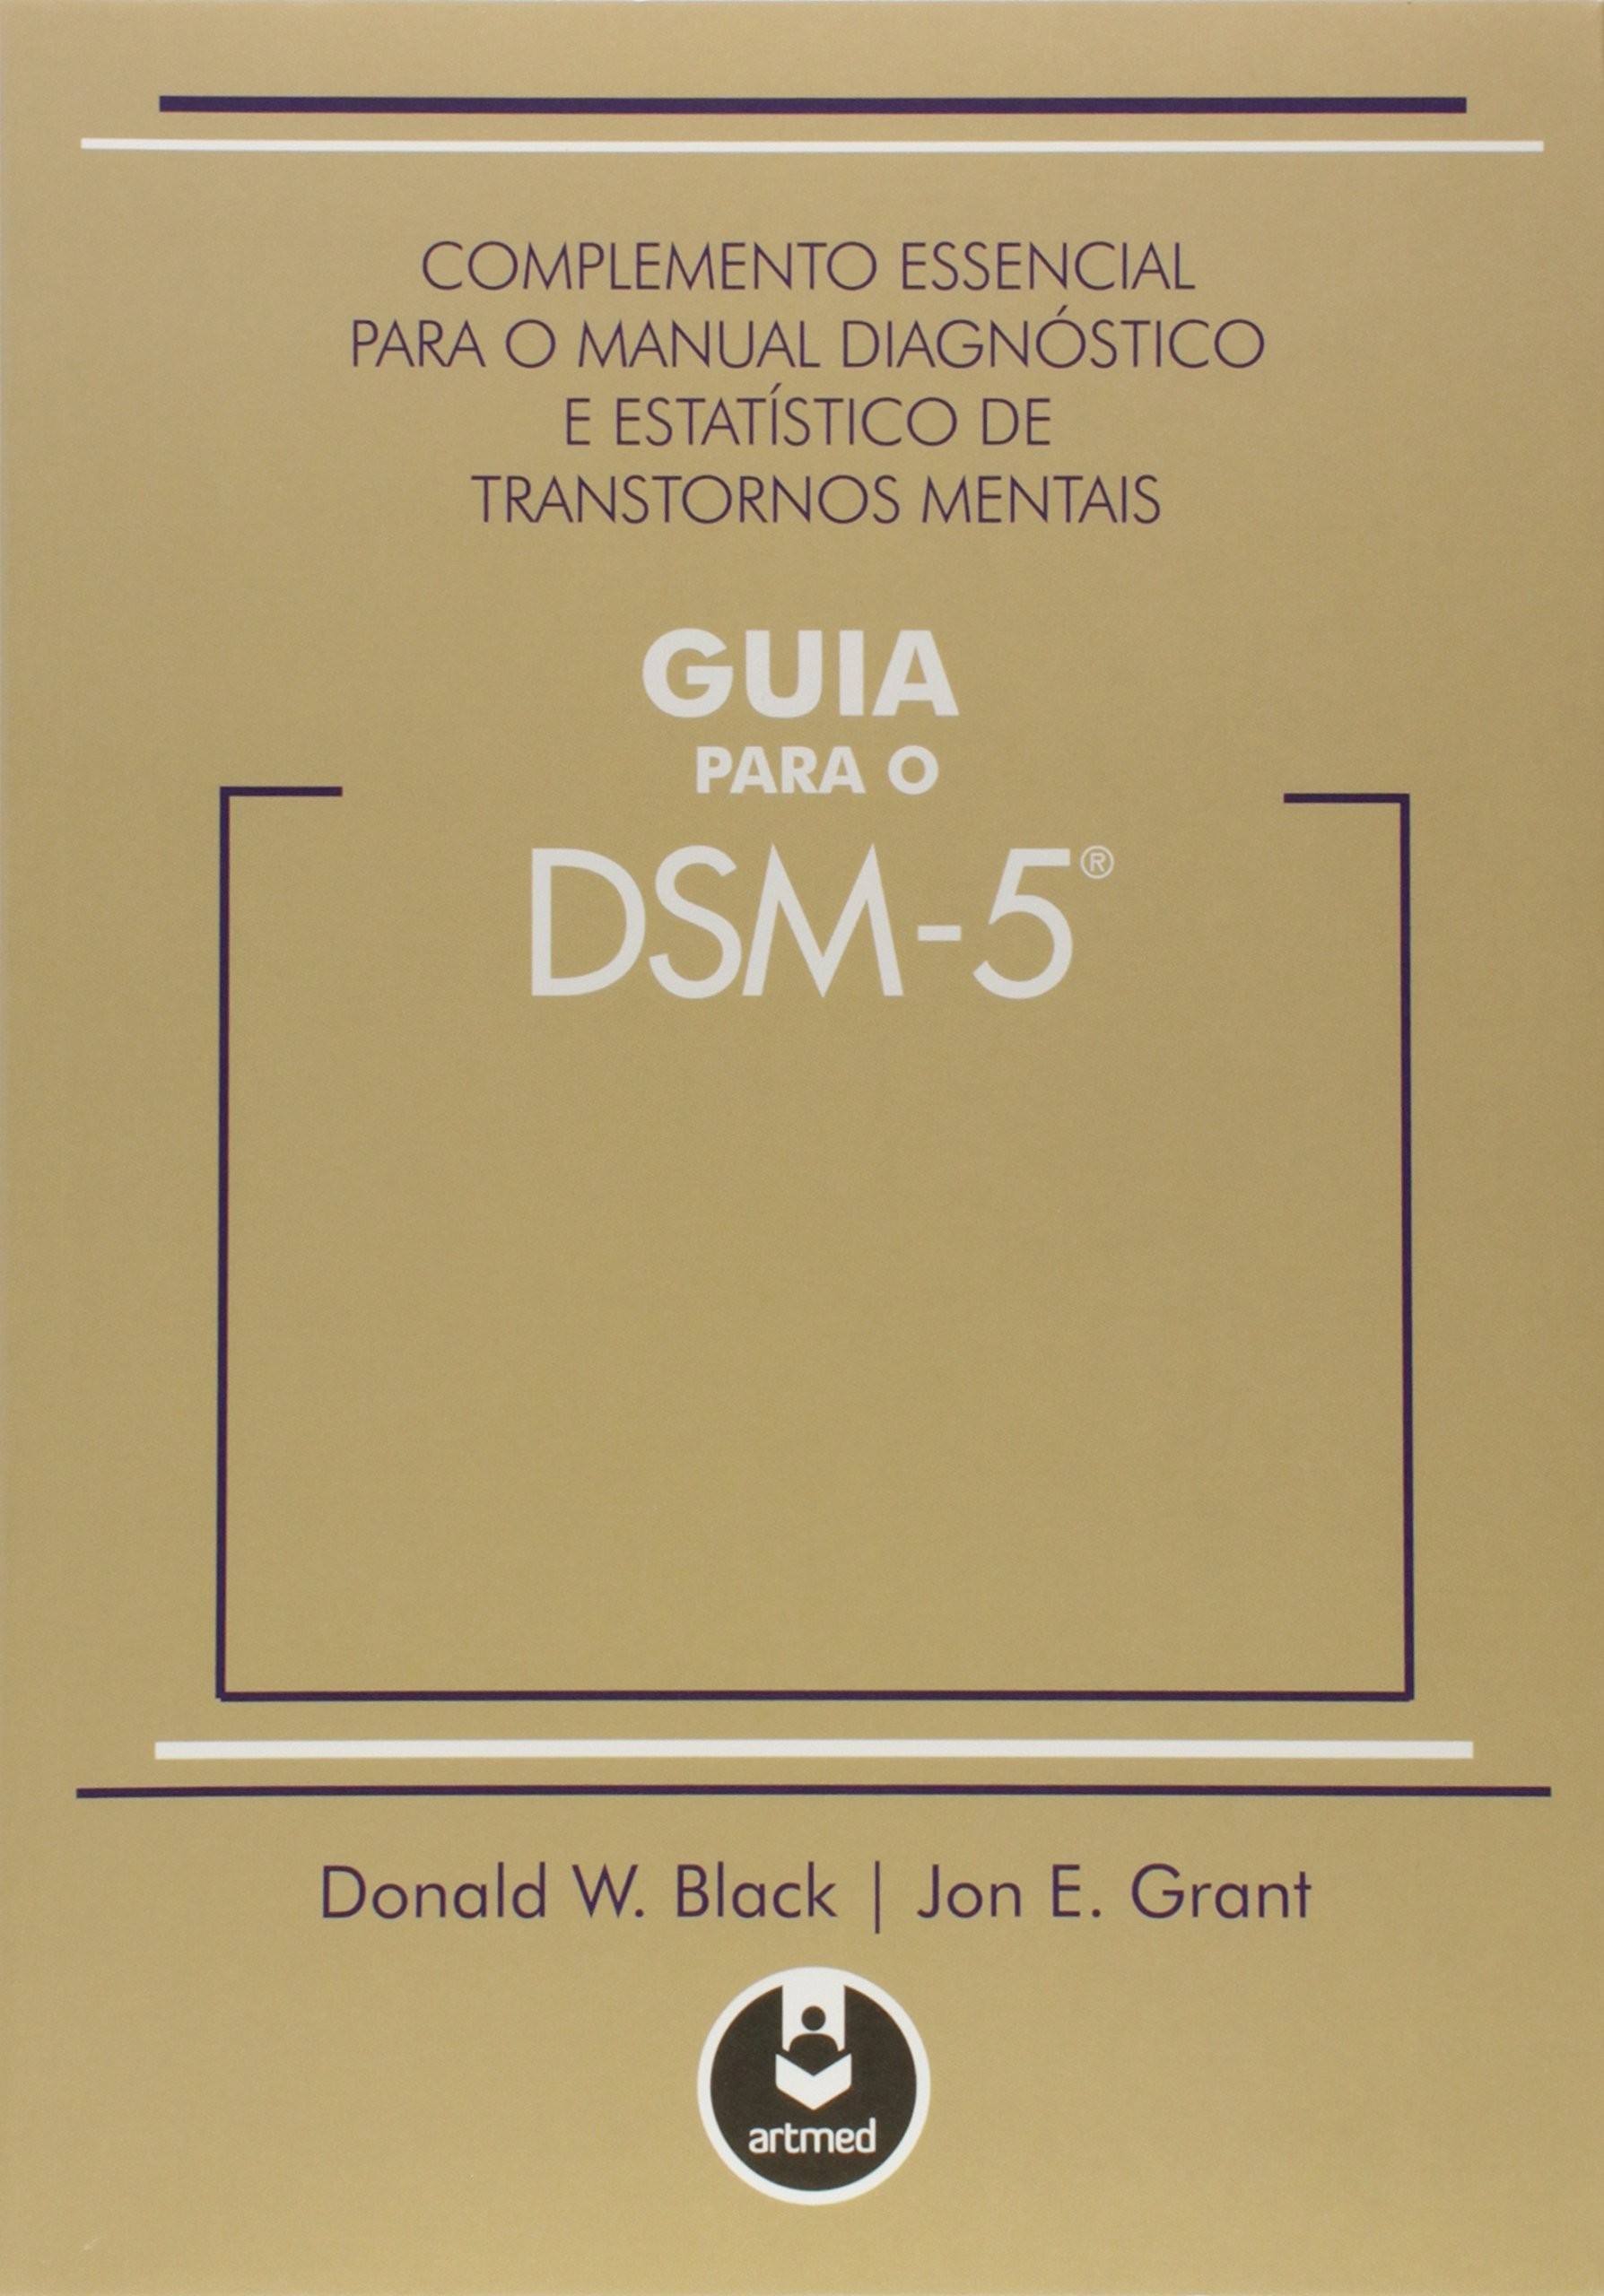 GUIA PARA O DSM-5 - COMPLEMENTO ESSENCIAL PARA O MANUAL DIAGNOSTICO E ESTAT